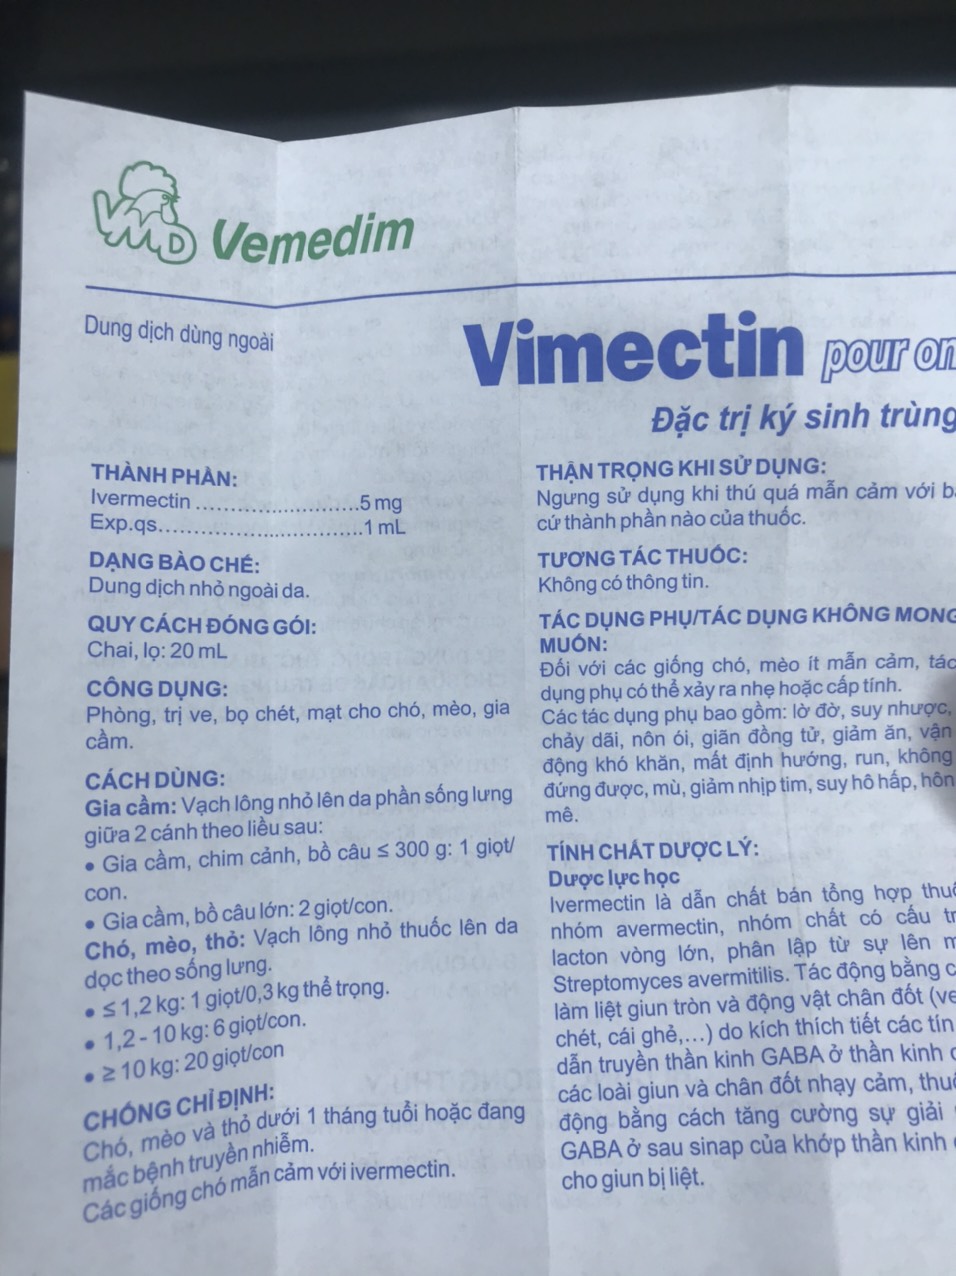 Vimectin Pour On 20ml - Ve Bọ Chét Chó Mèo Mạt Gà